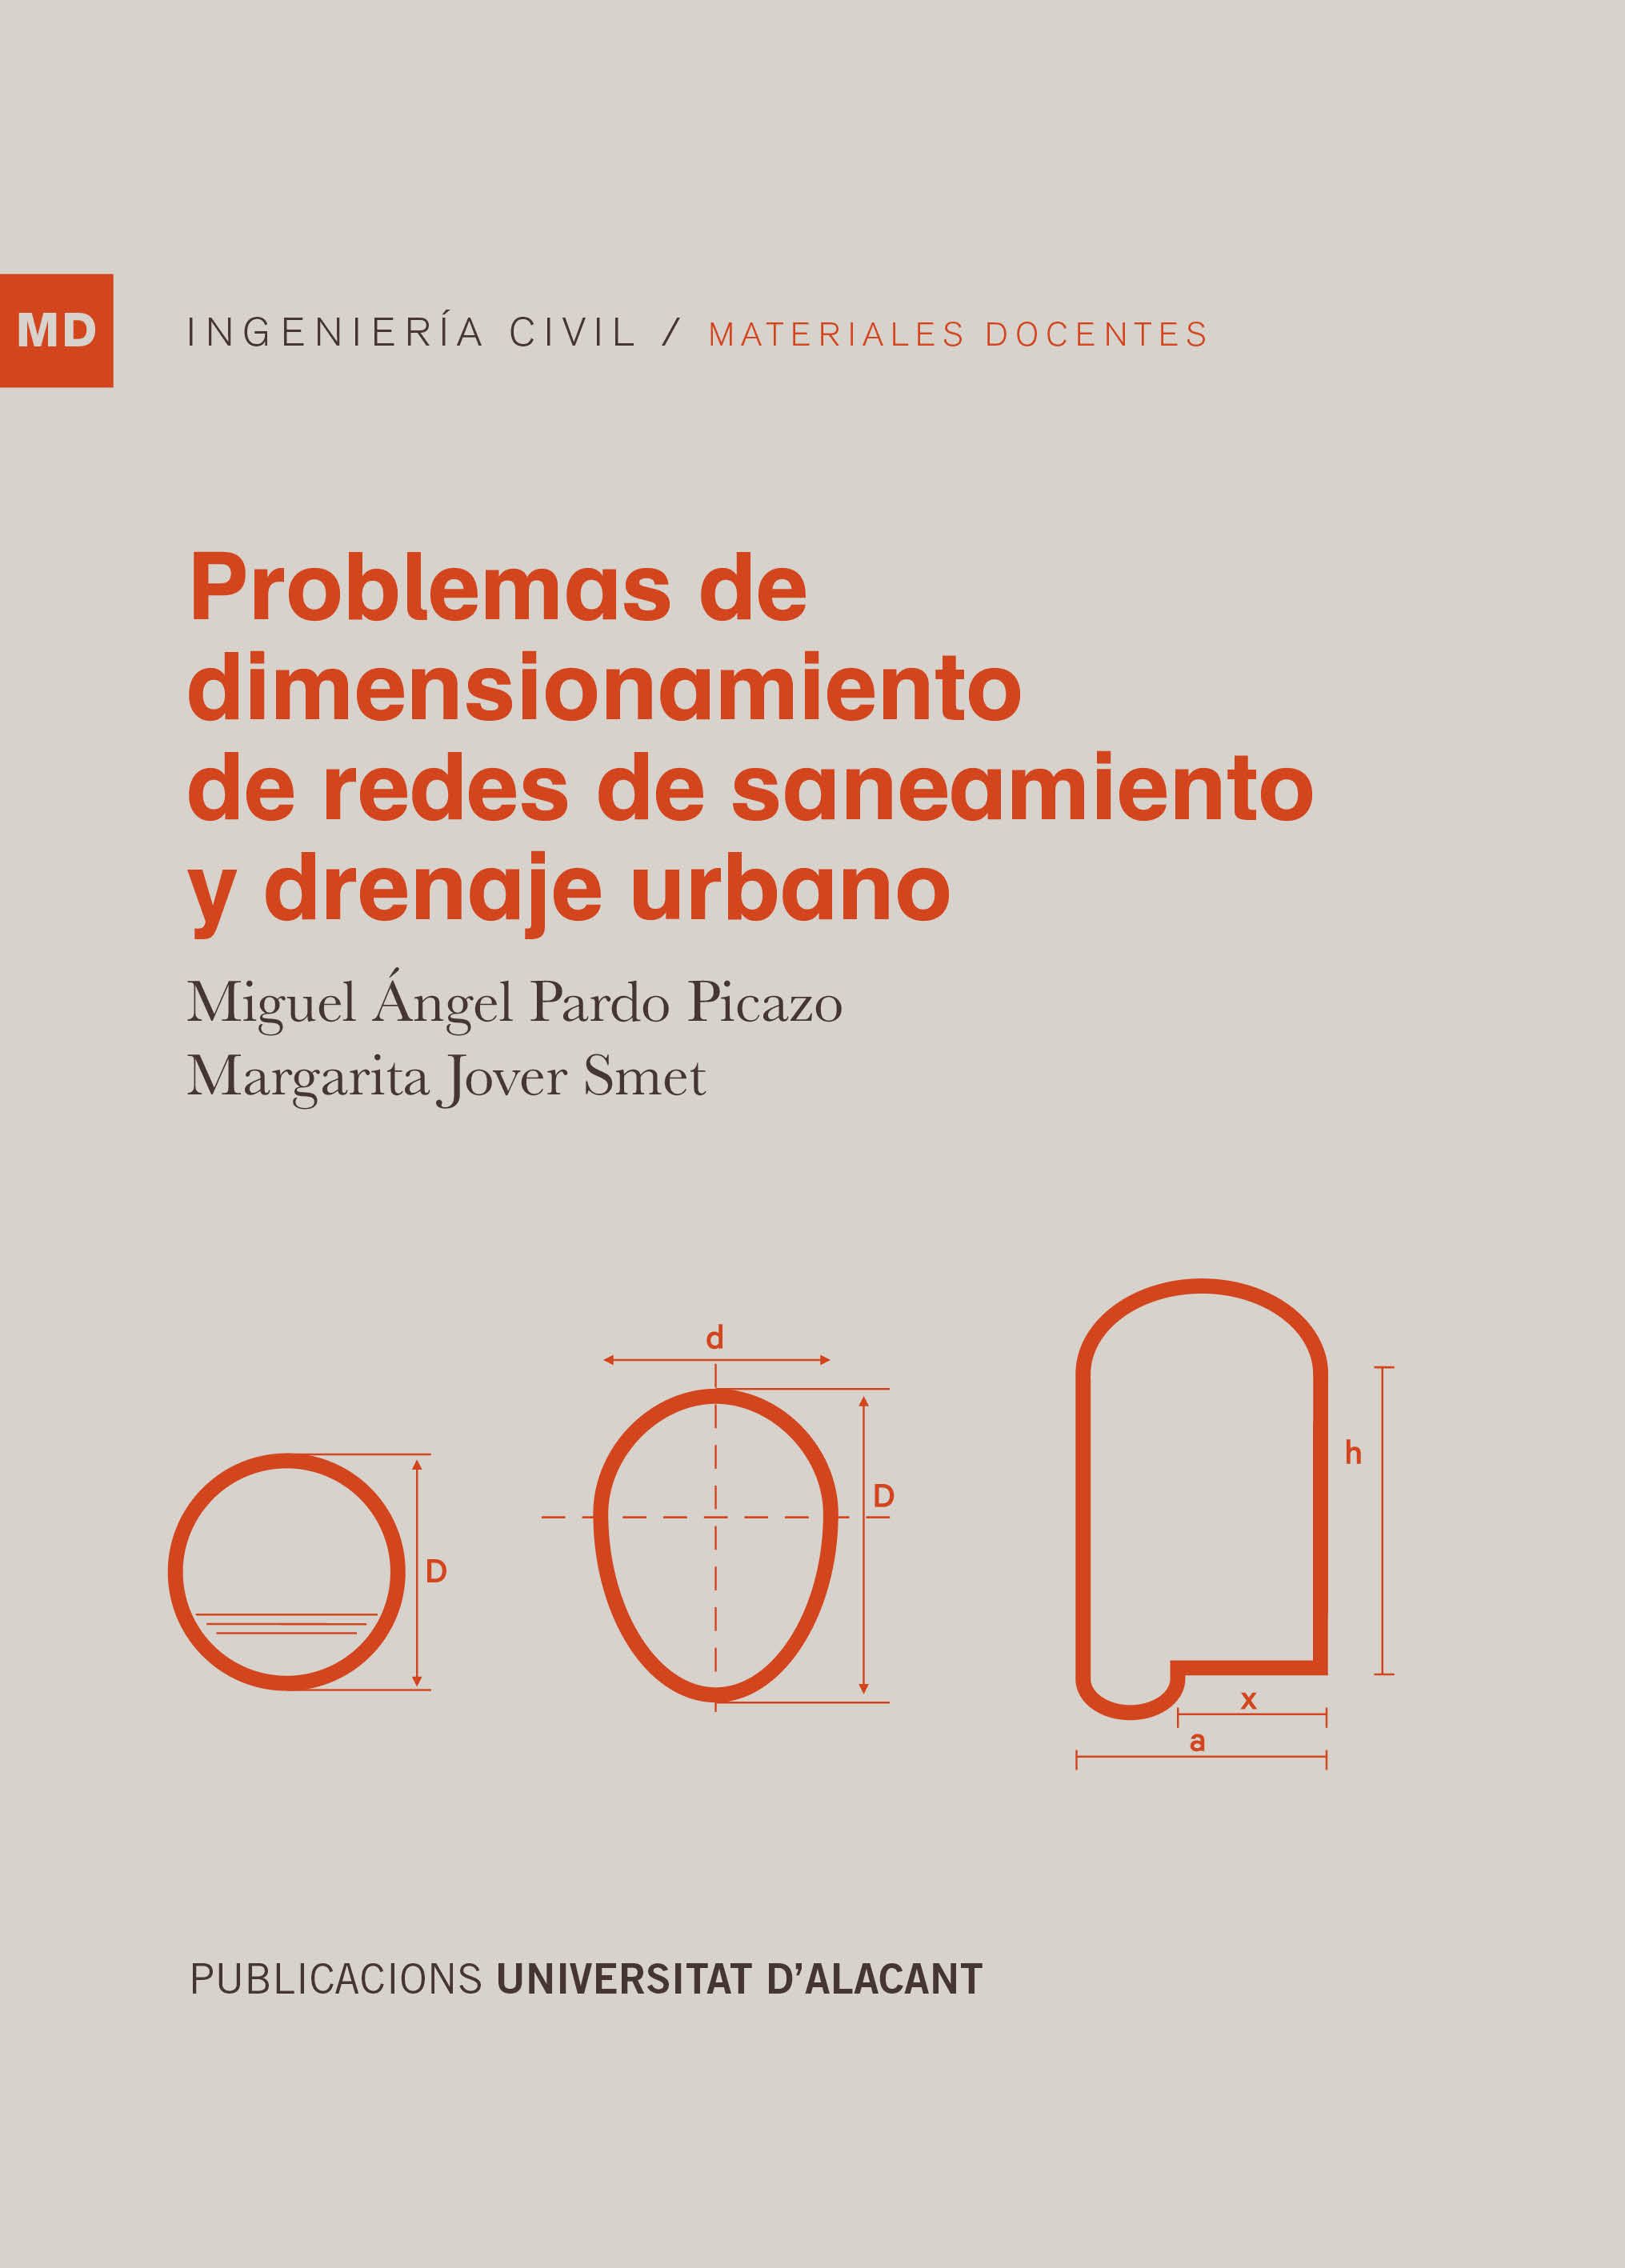 Problemas de dimensionamiento de redes de saneamiento y drenaje urbano